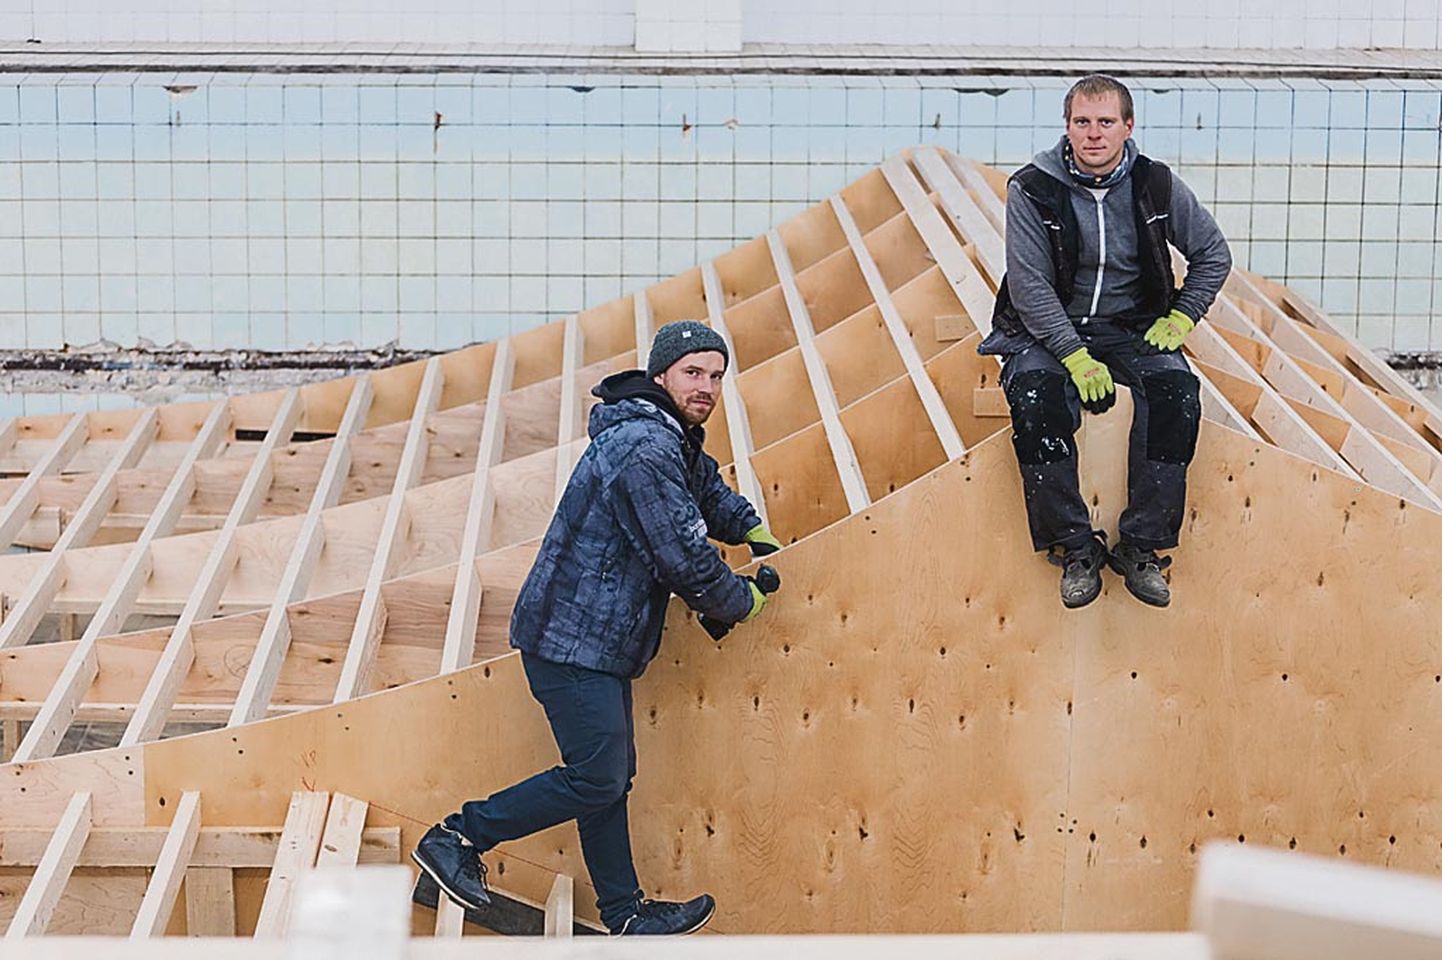 Raba siserulaparki on iga päev ehitanud neli kuni kaheksa inimest. Paar kuud tagasi jäid Pärnu Postimehe fotograafi kaamera objektiivi ette Rasmus Paimre (vasakul) ja Varmo Juurikas.